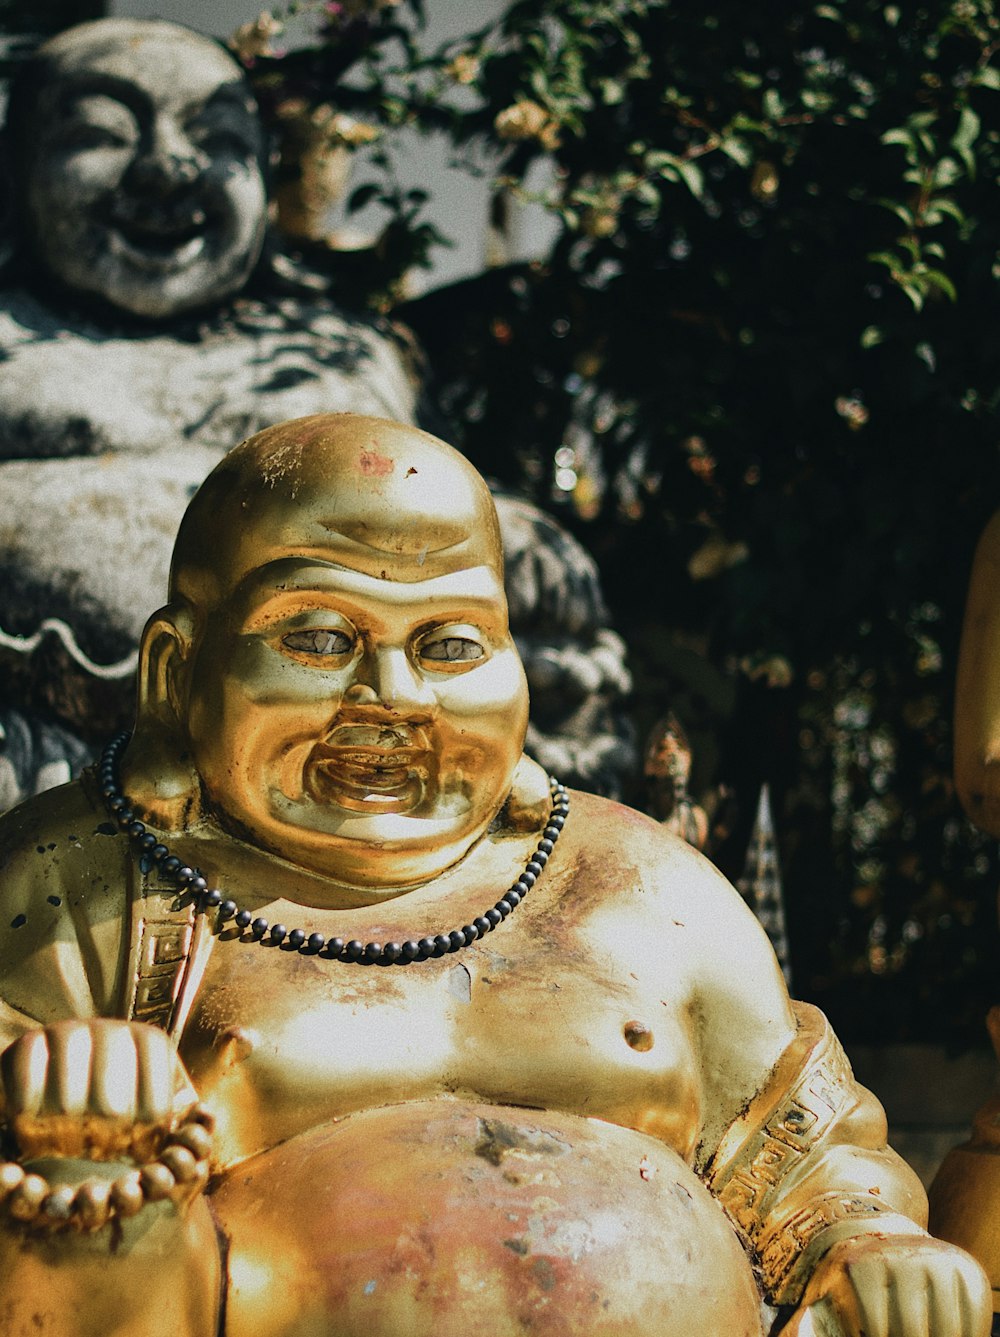 Figurine de Budai près de la statue